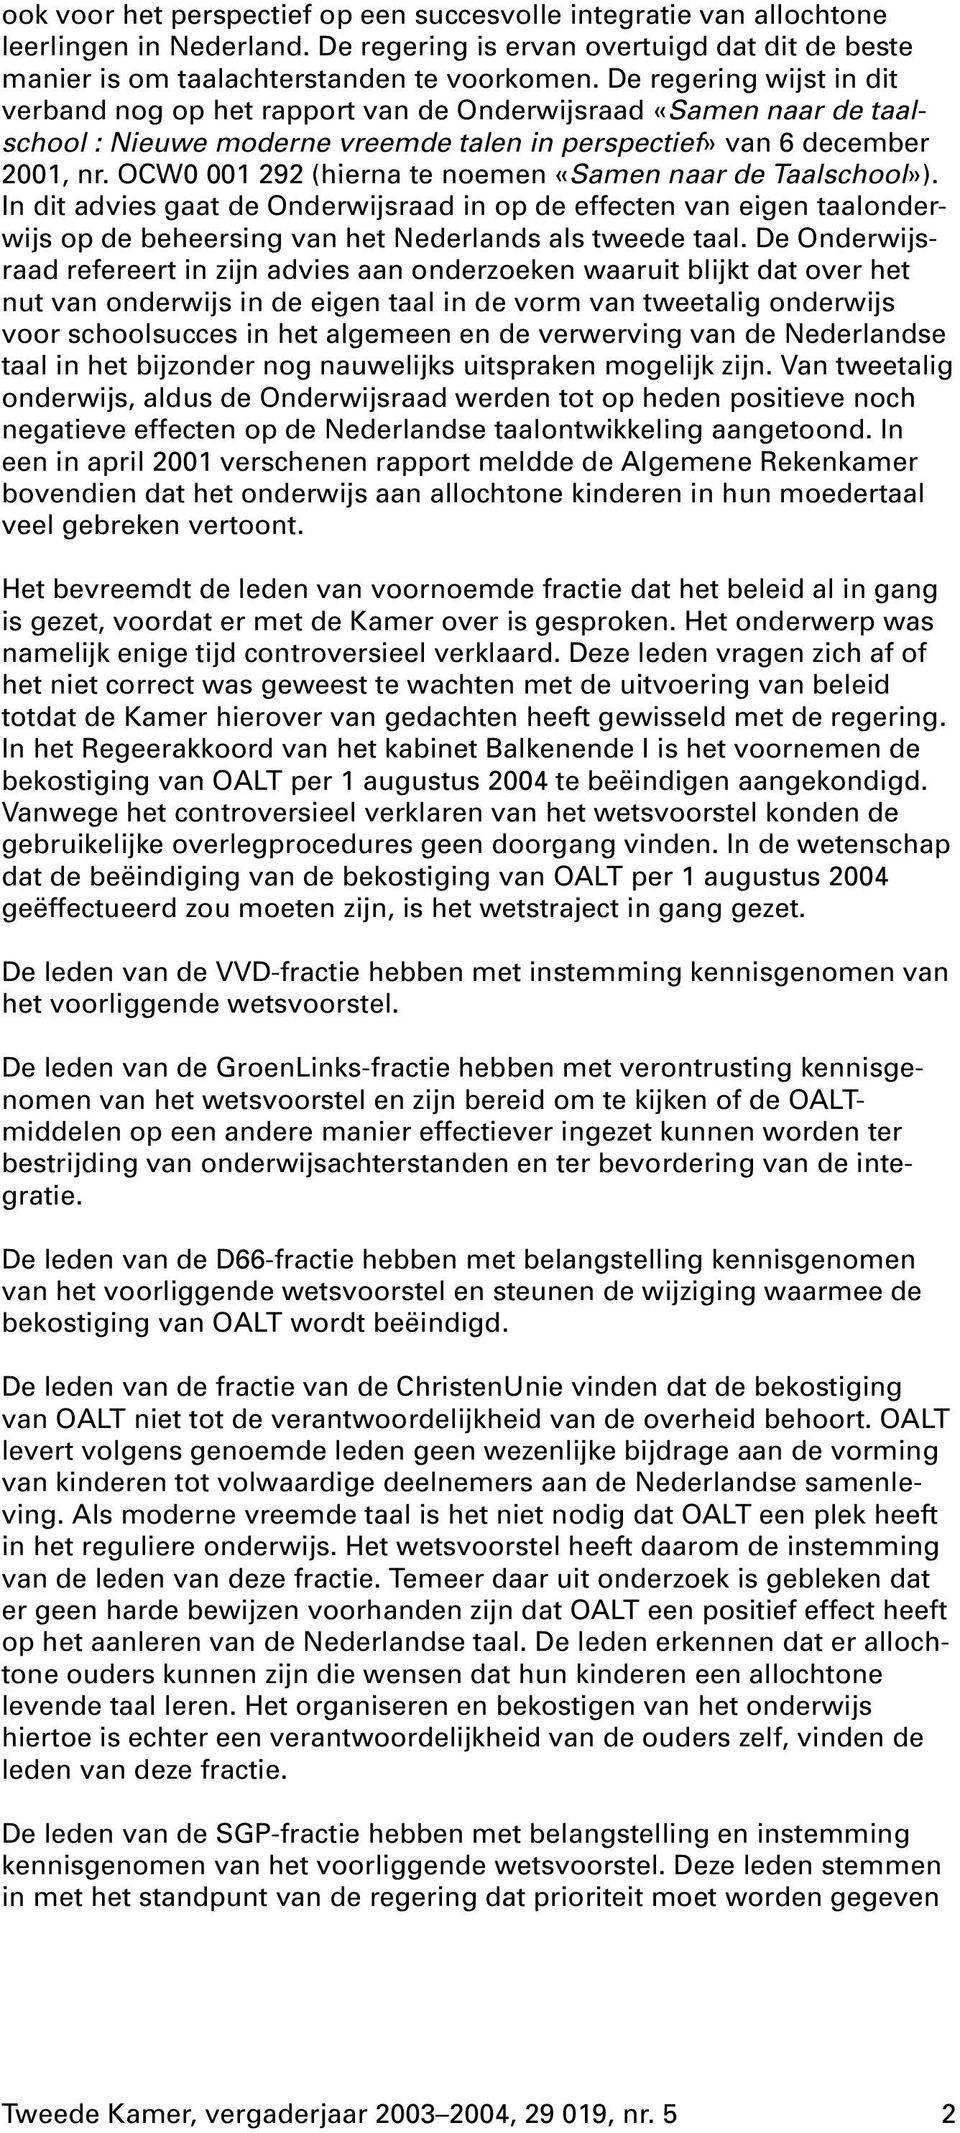 OCW0 001 292 (hierna te noemen «Samen naar de Taalschool»). In dit advies gaat de Onderwijsraad in op de effecten van eigen taalonderwijs op de beheersing van het Nederlands als tweede taal.